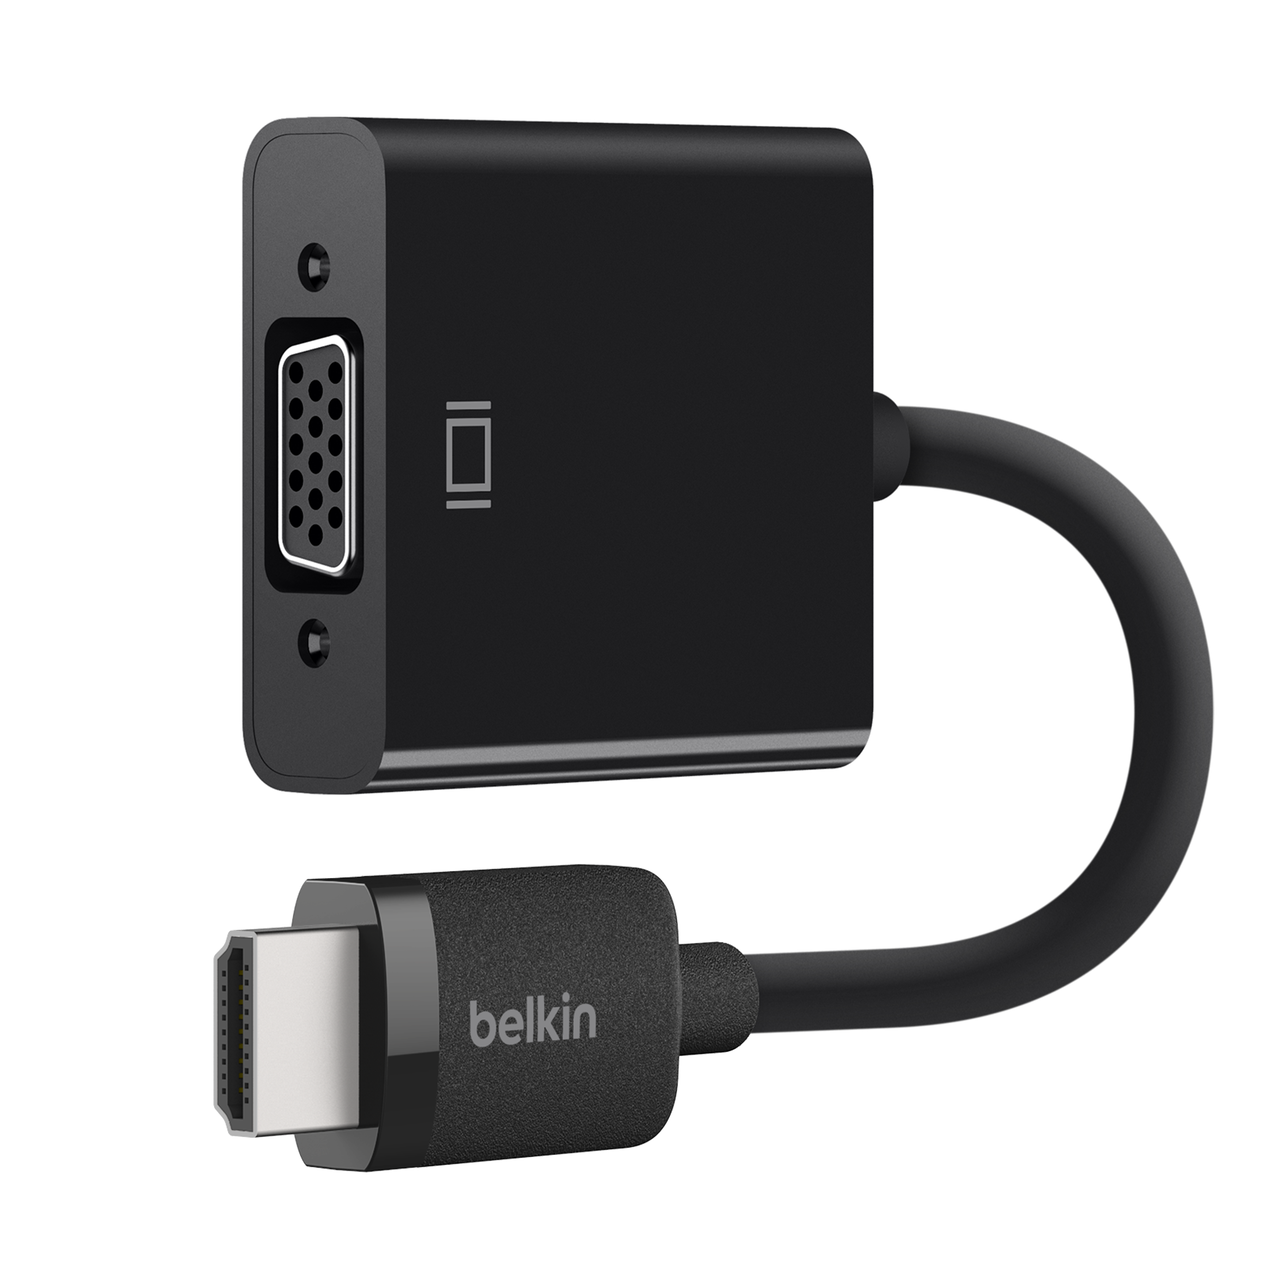 10 Feet Belkin Belkin Laptop to HDTV VGA Audio Video Cable F3S007-10 